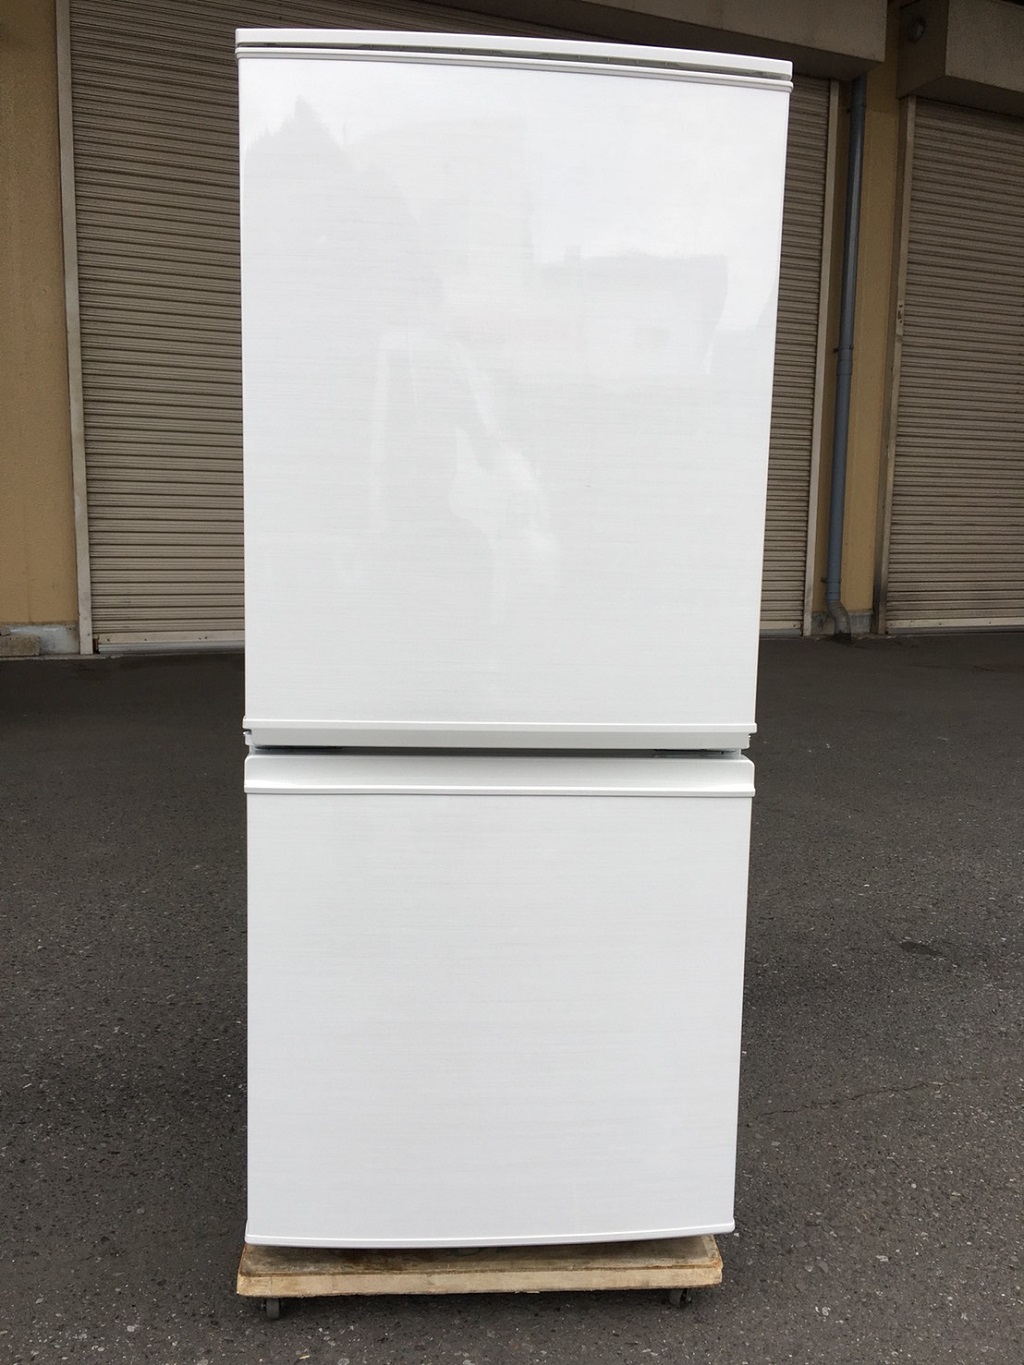 シャープ製のノンフロン冷凍冷蔵庫（SJ-D14C-W）の正面